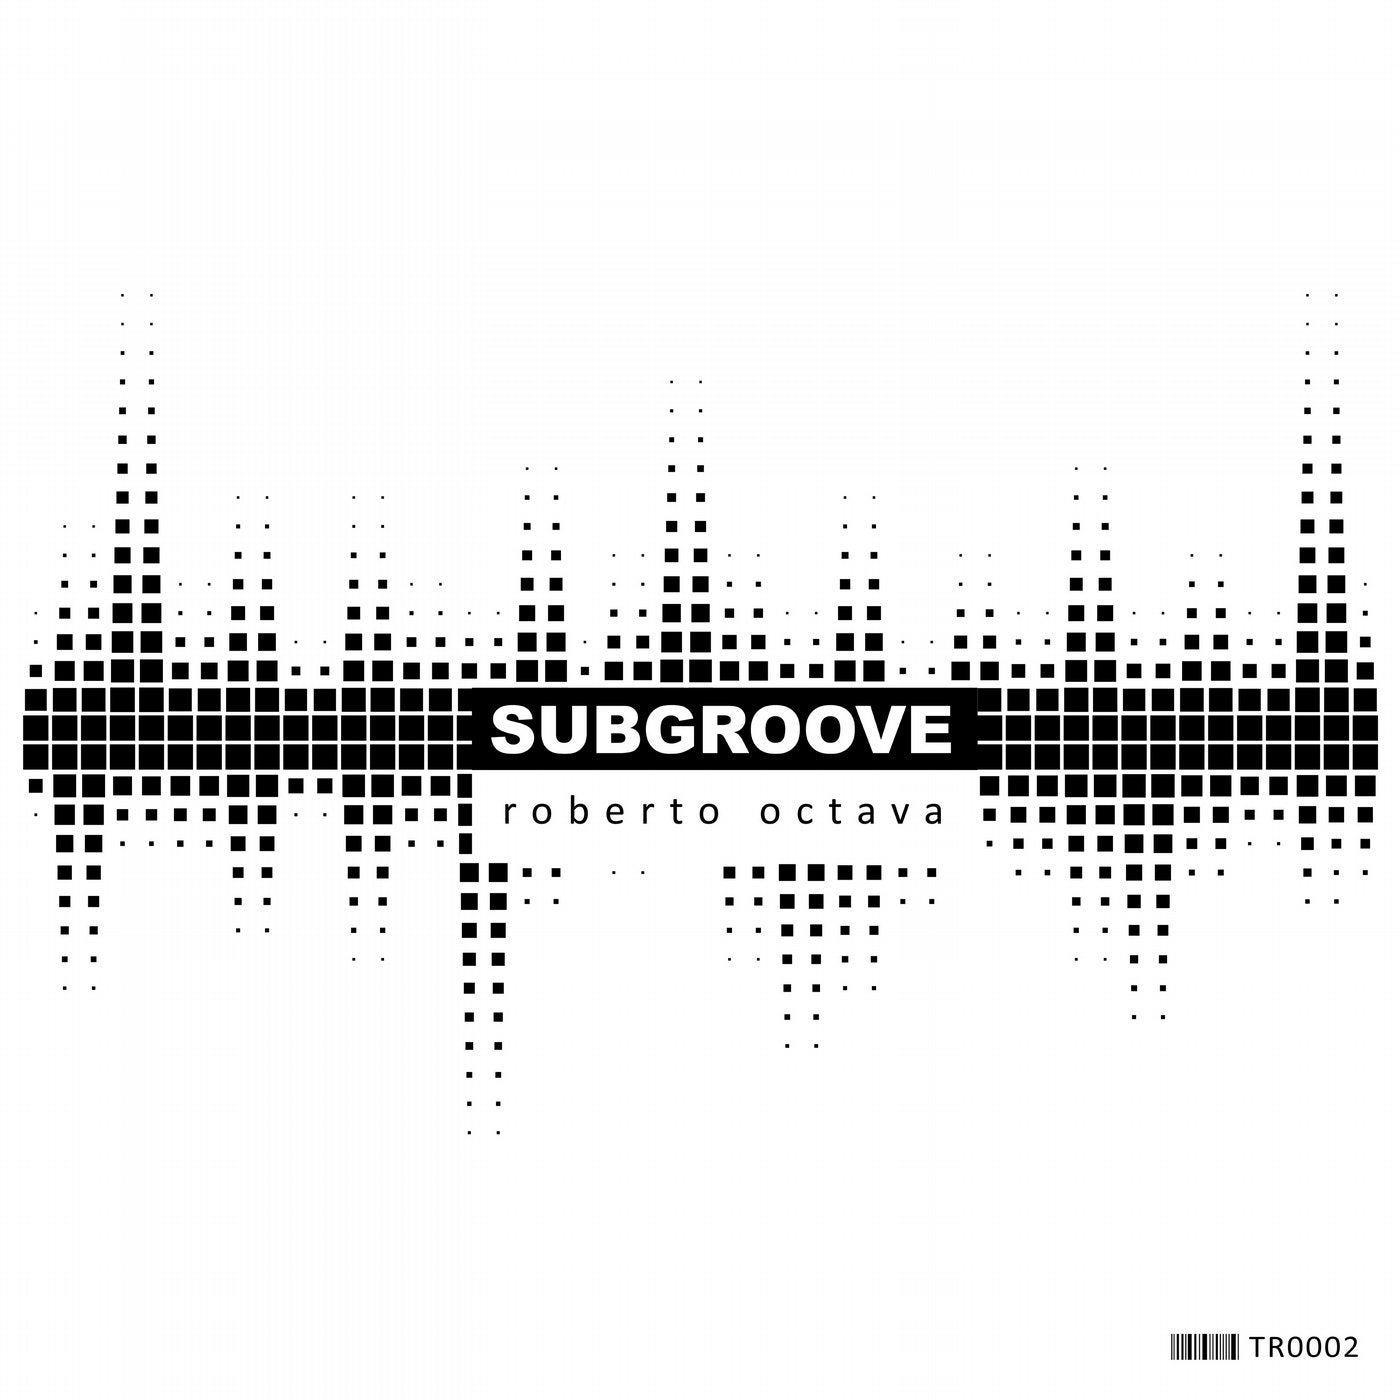 SubGroove (Original Mix)